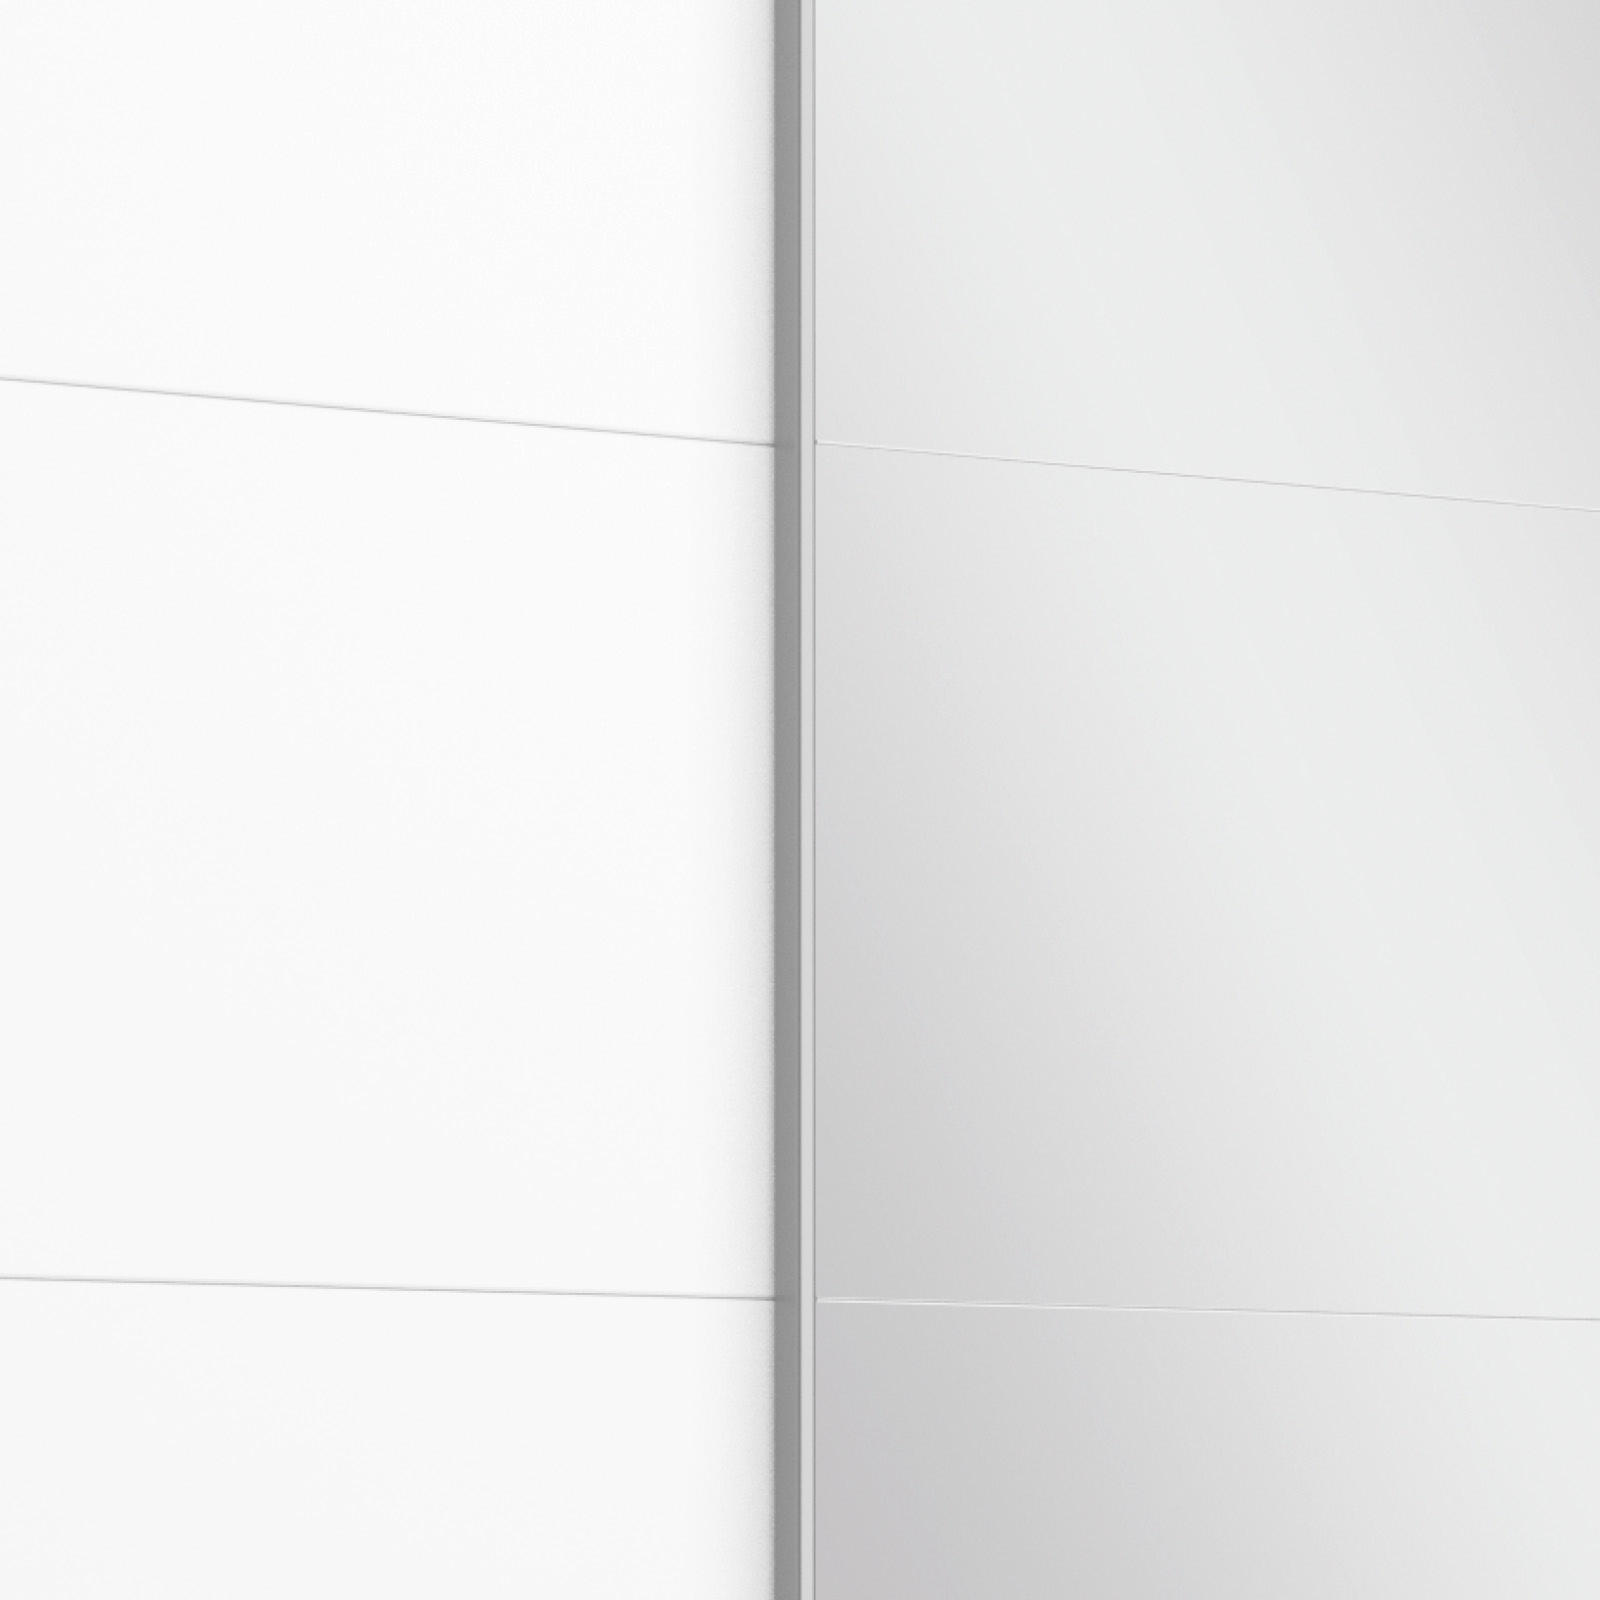 SCHWEBETÜRENSCHRANK 2-türig Grau, Weiß  - Alufarben/Weiß, MODERN, Holzwerkstoff/Metall (181/210/62cm) - MID.YOU